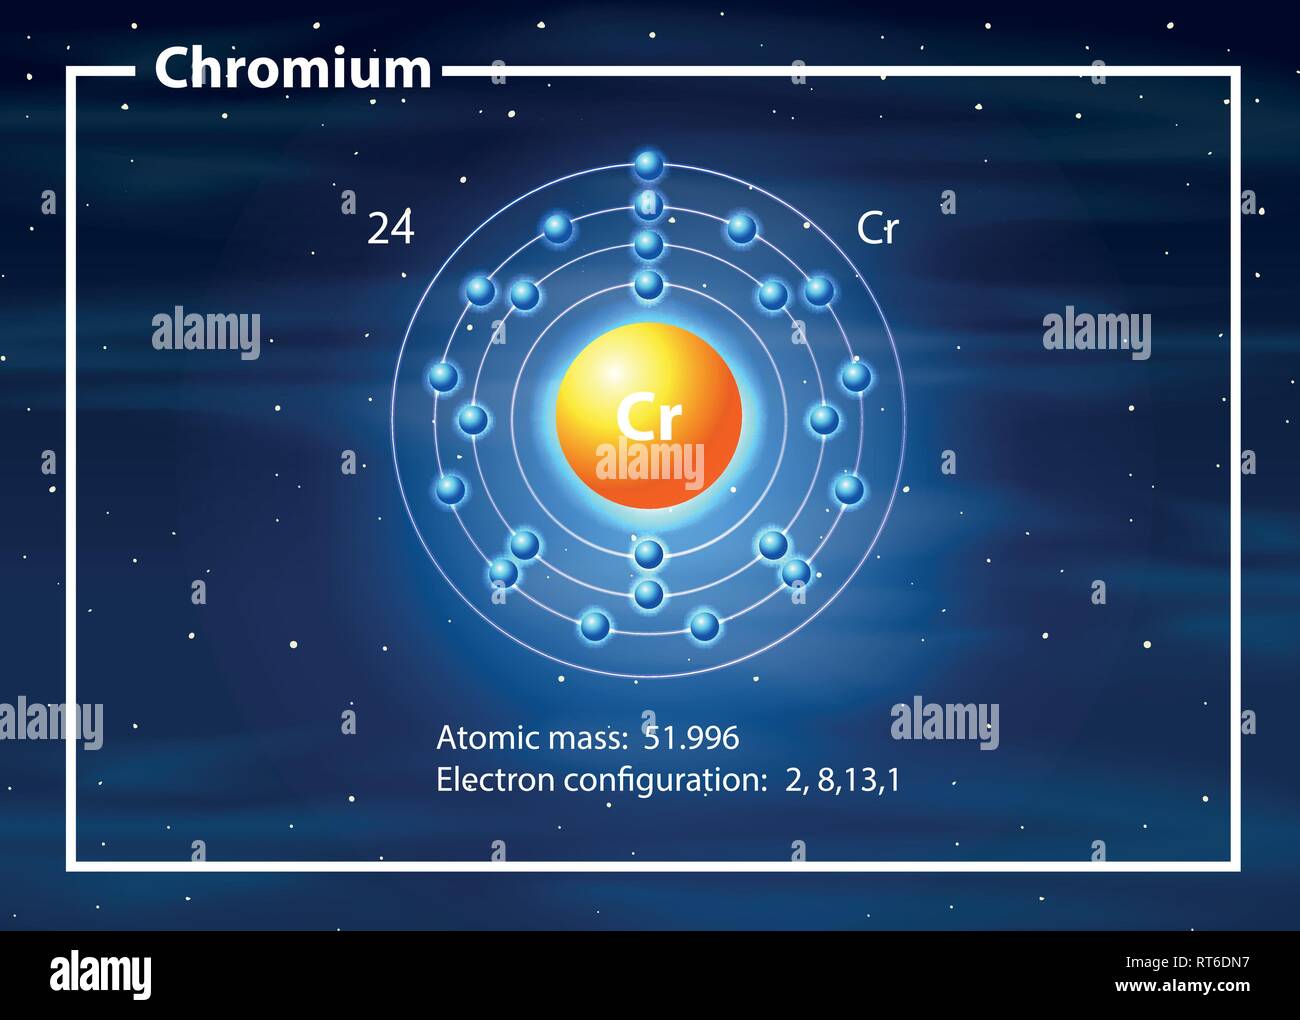 A chromium atom diagram illustration Stock Vector